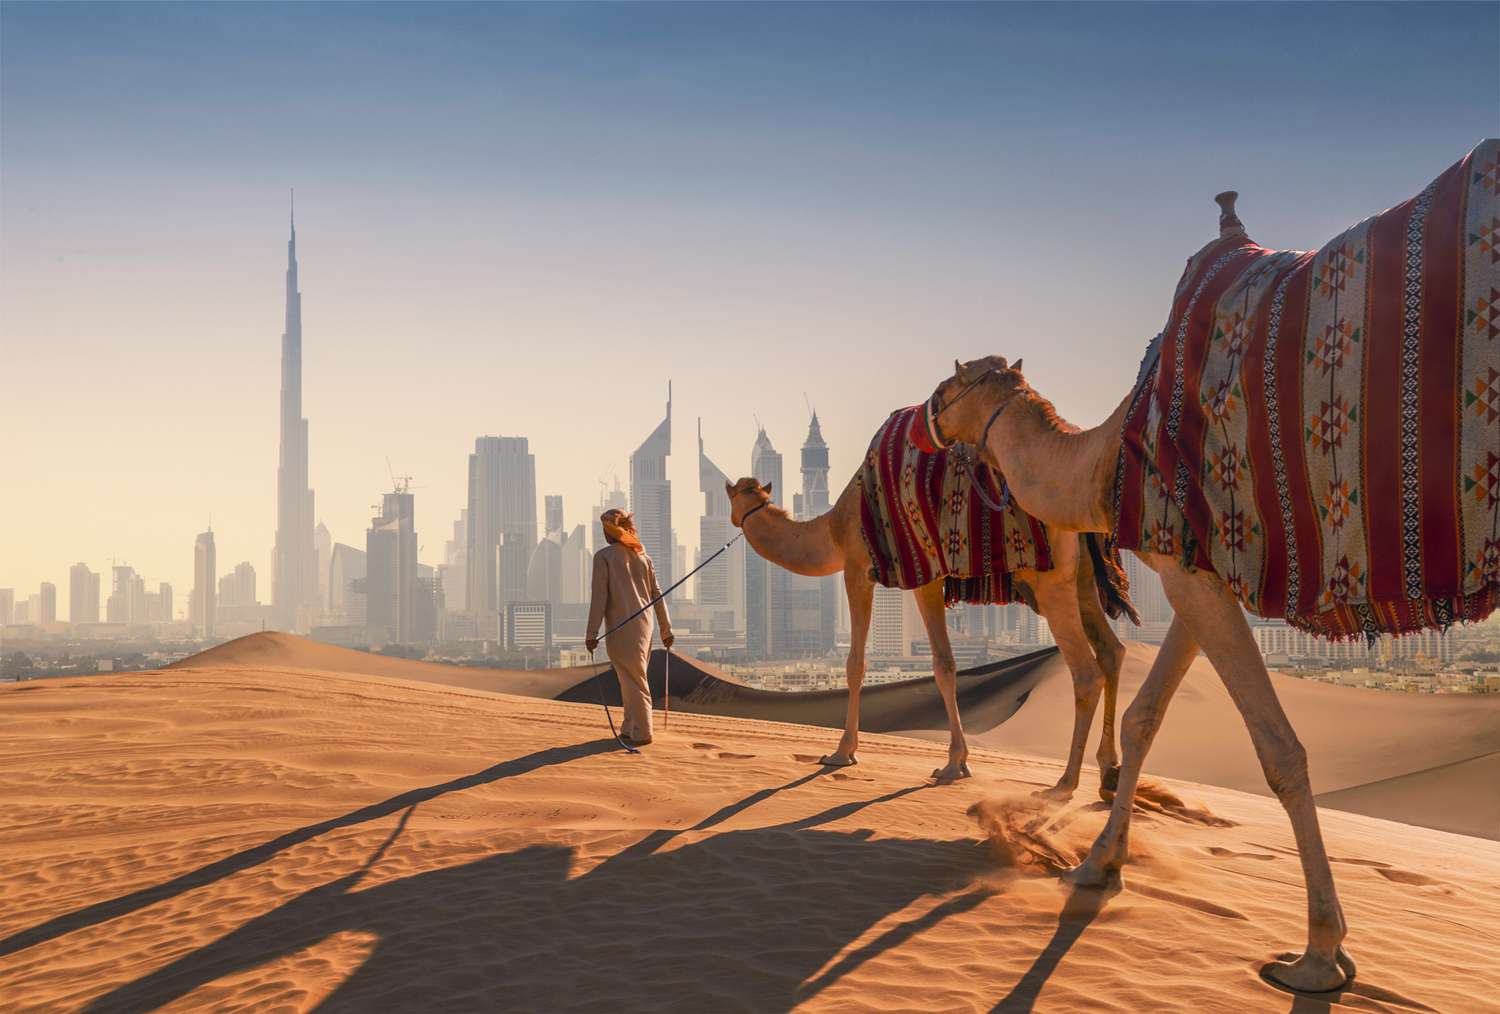 Dubaï, entre Modernité et Tradition